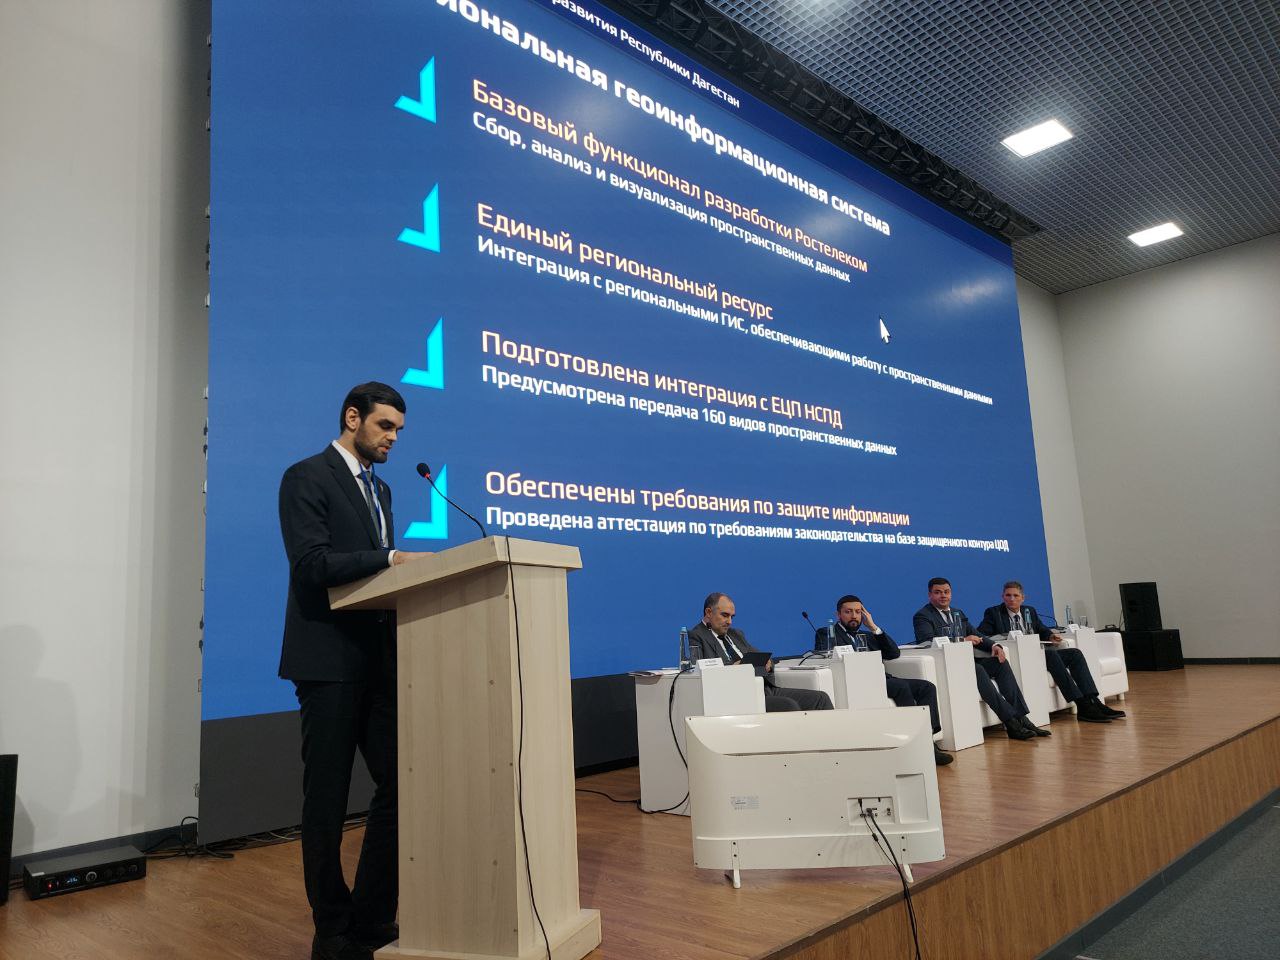 На форуме в Махачкале рассказали о возможностях Региональной геоинформационной системы Дагестана